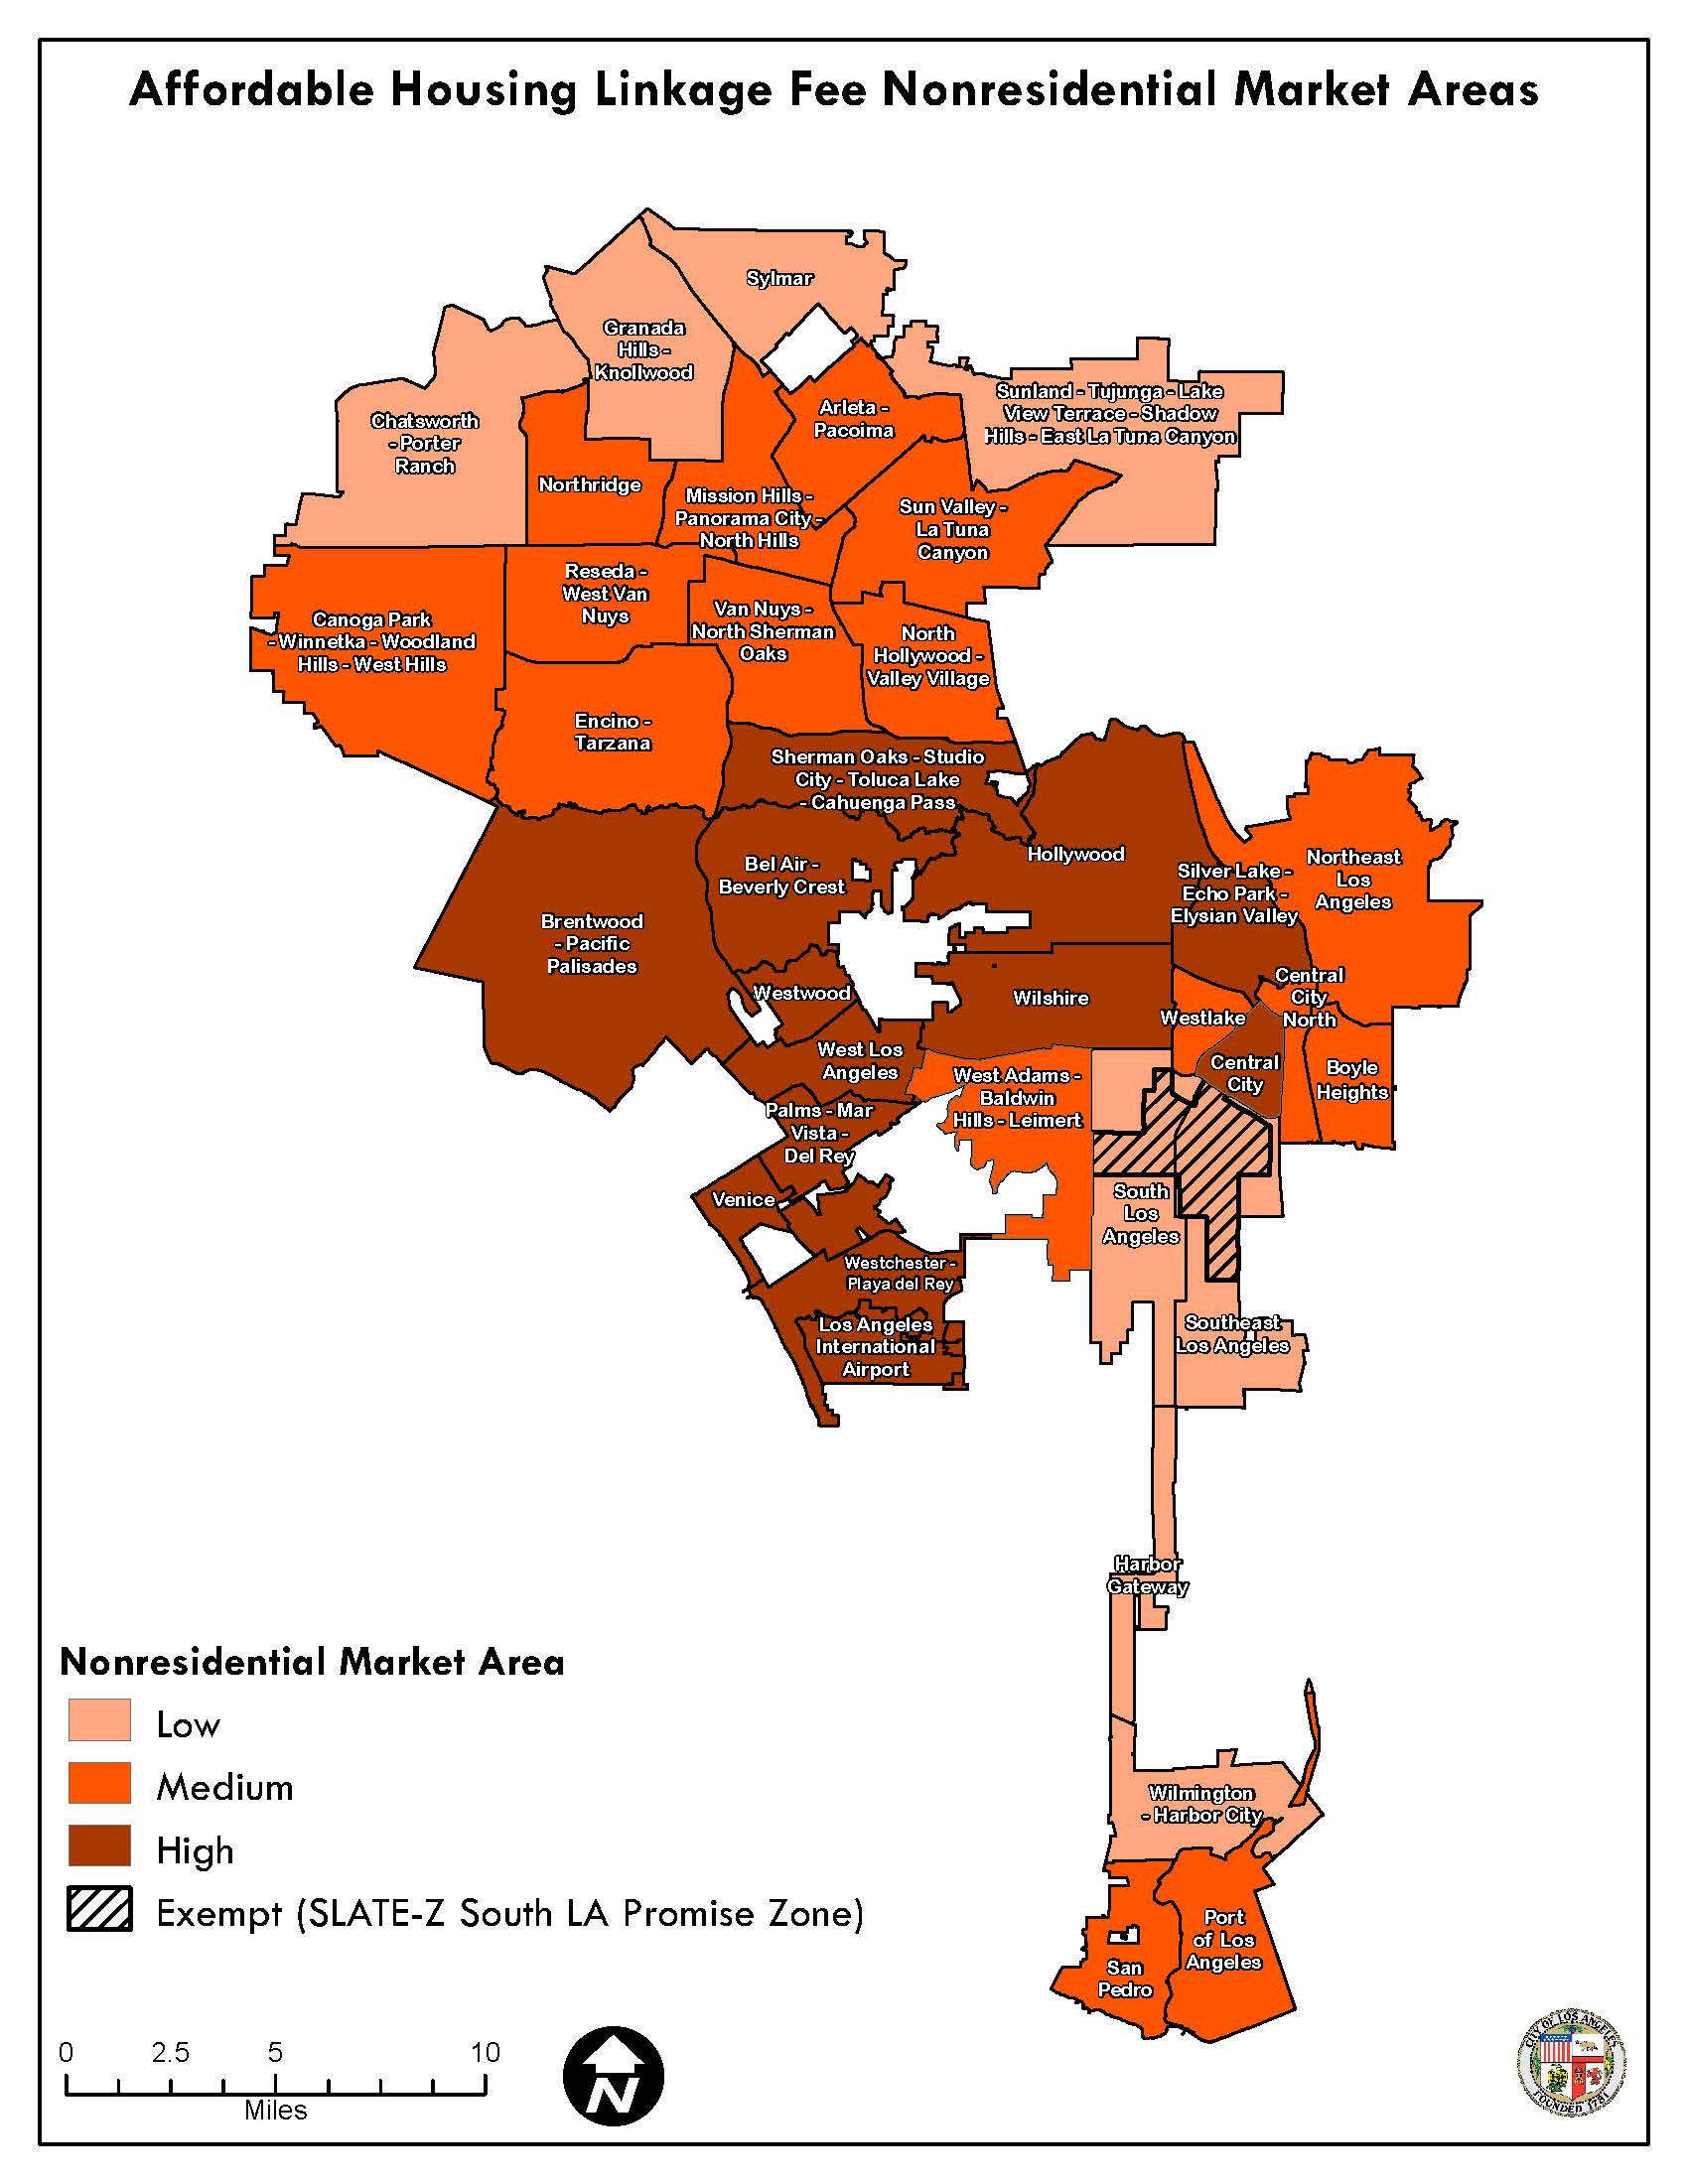 Non-Residential Market Area